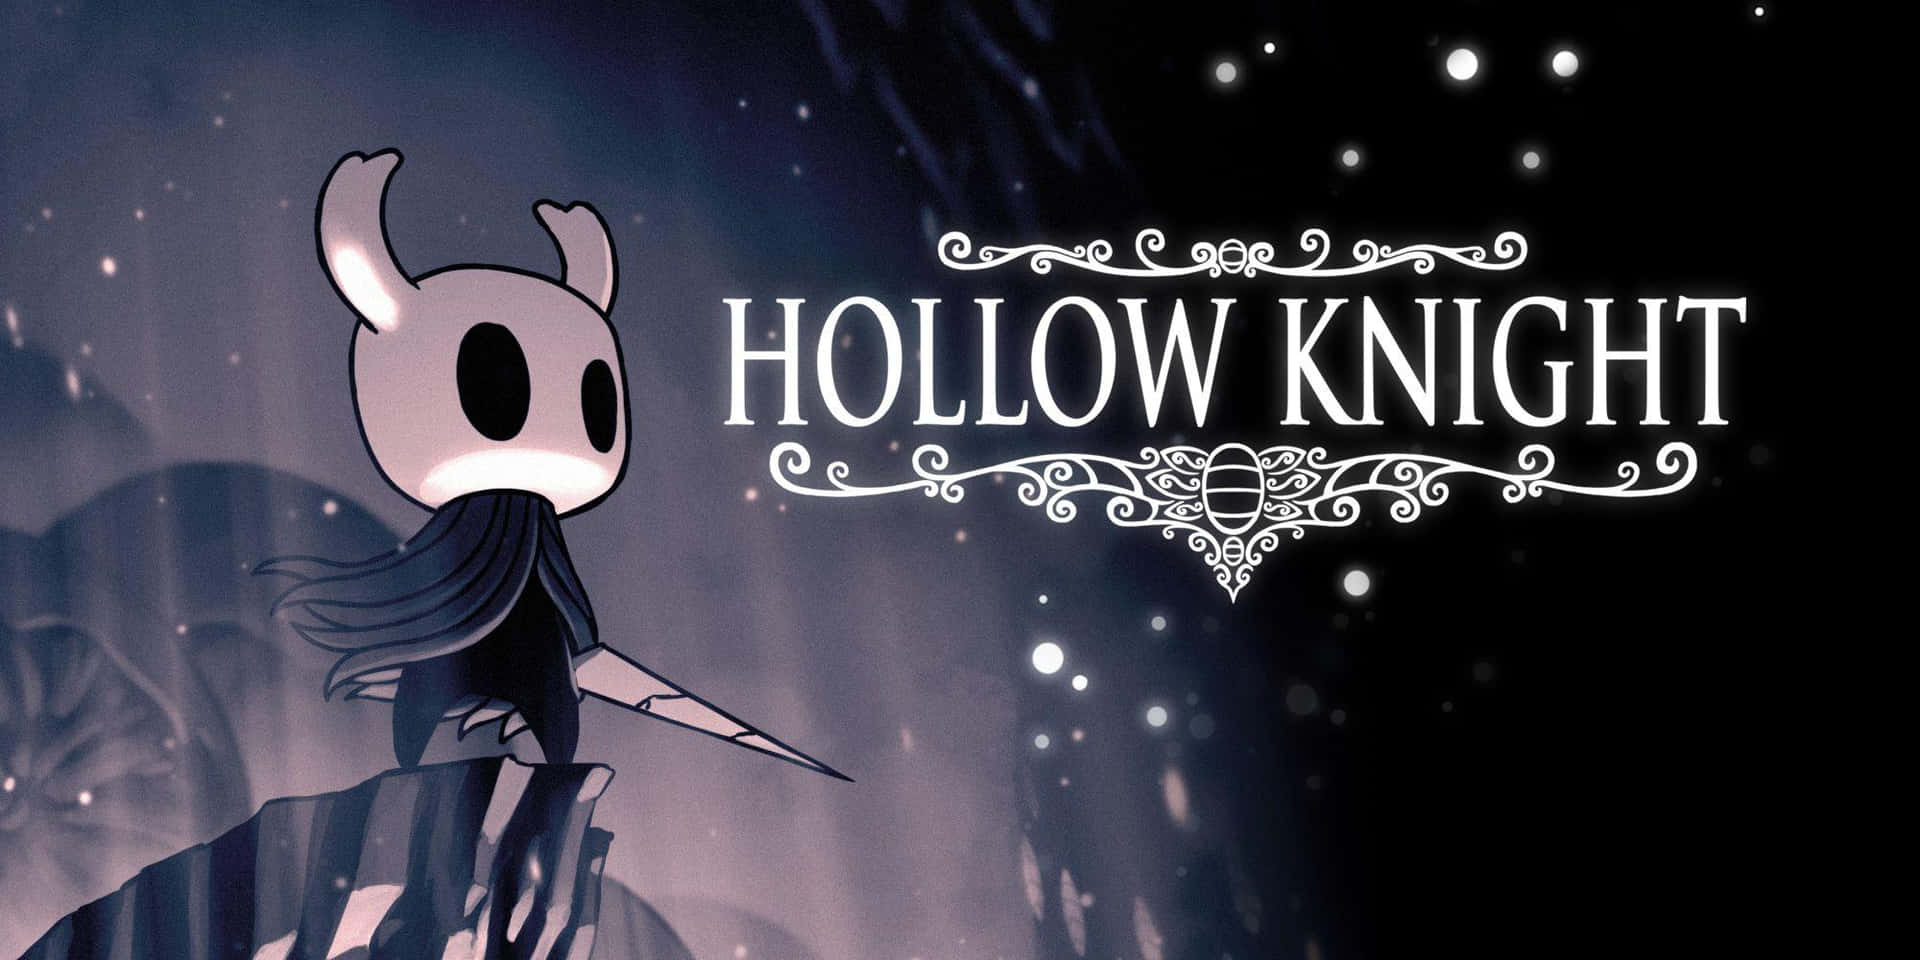 Ilprotagonista Di Hollow Knight Combatte Per Ciò In Cui Crede.